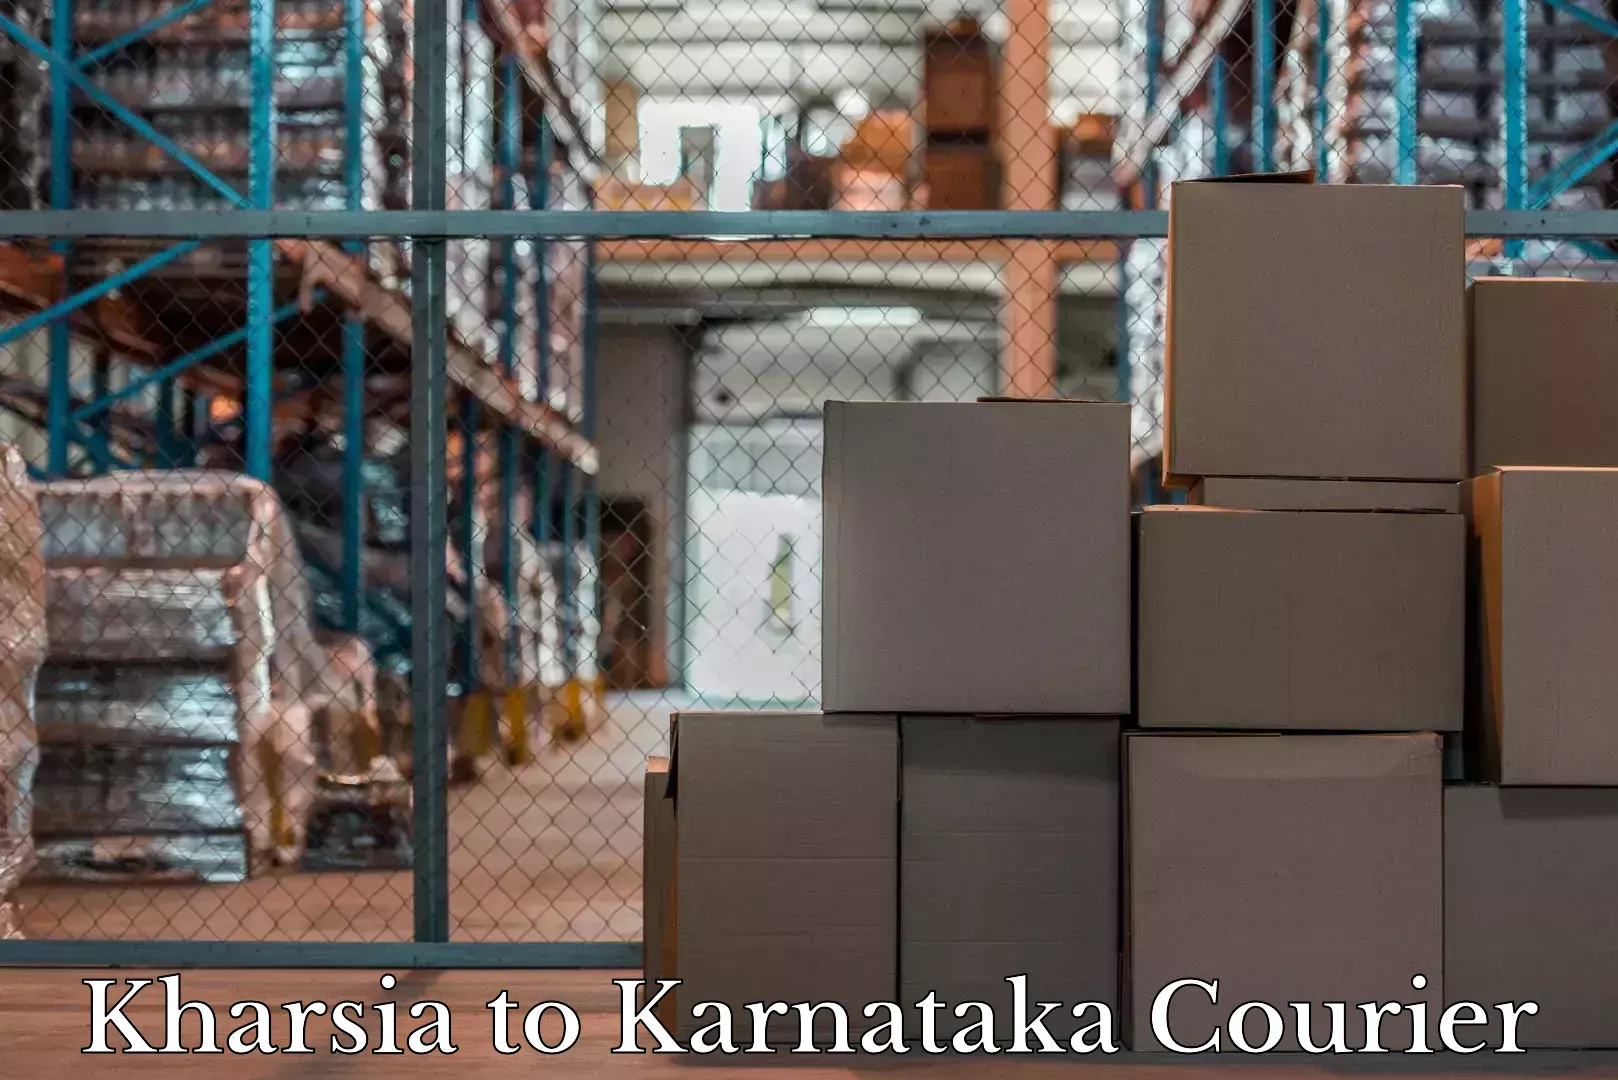 Baggage delivery optimization Kharsia to Karnataka